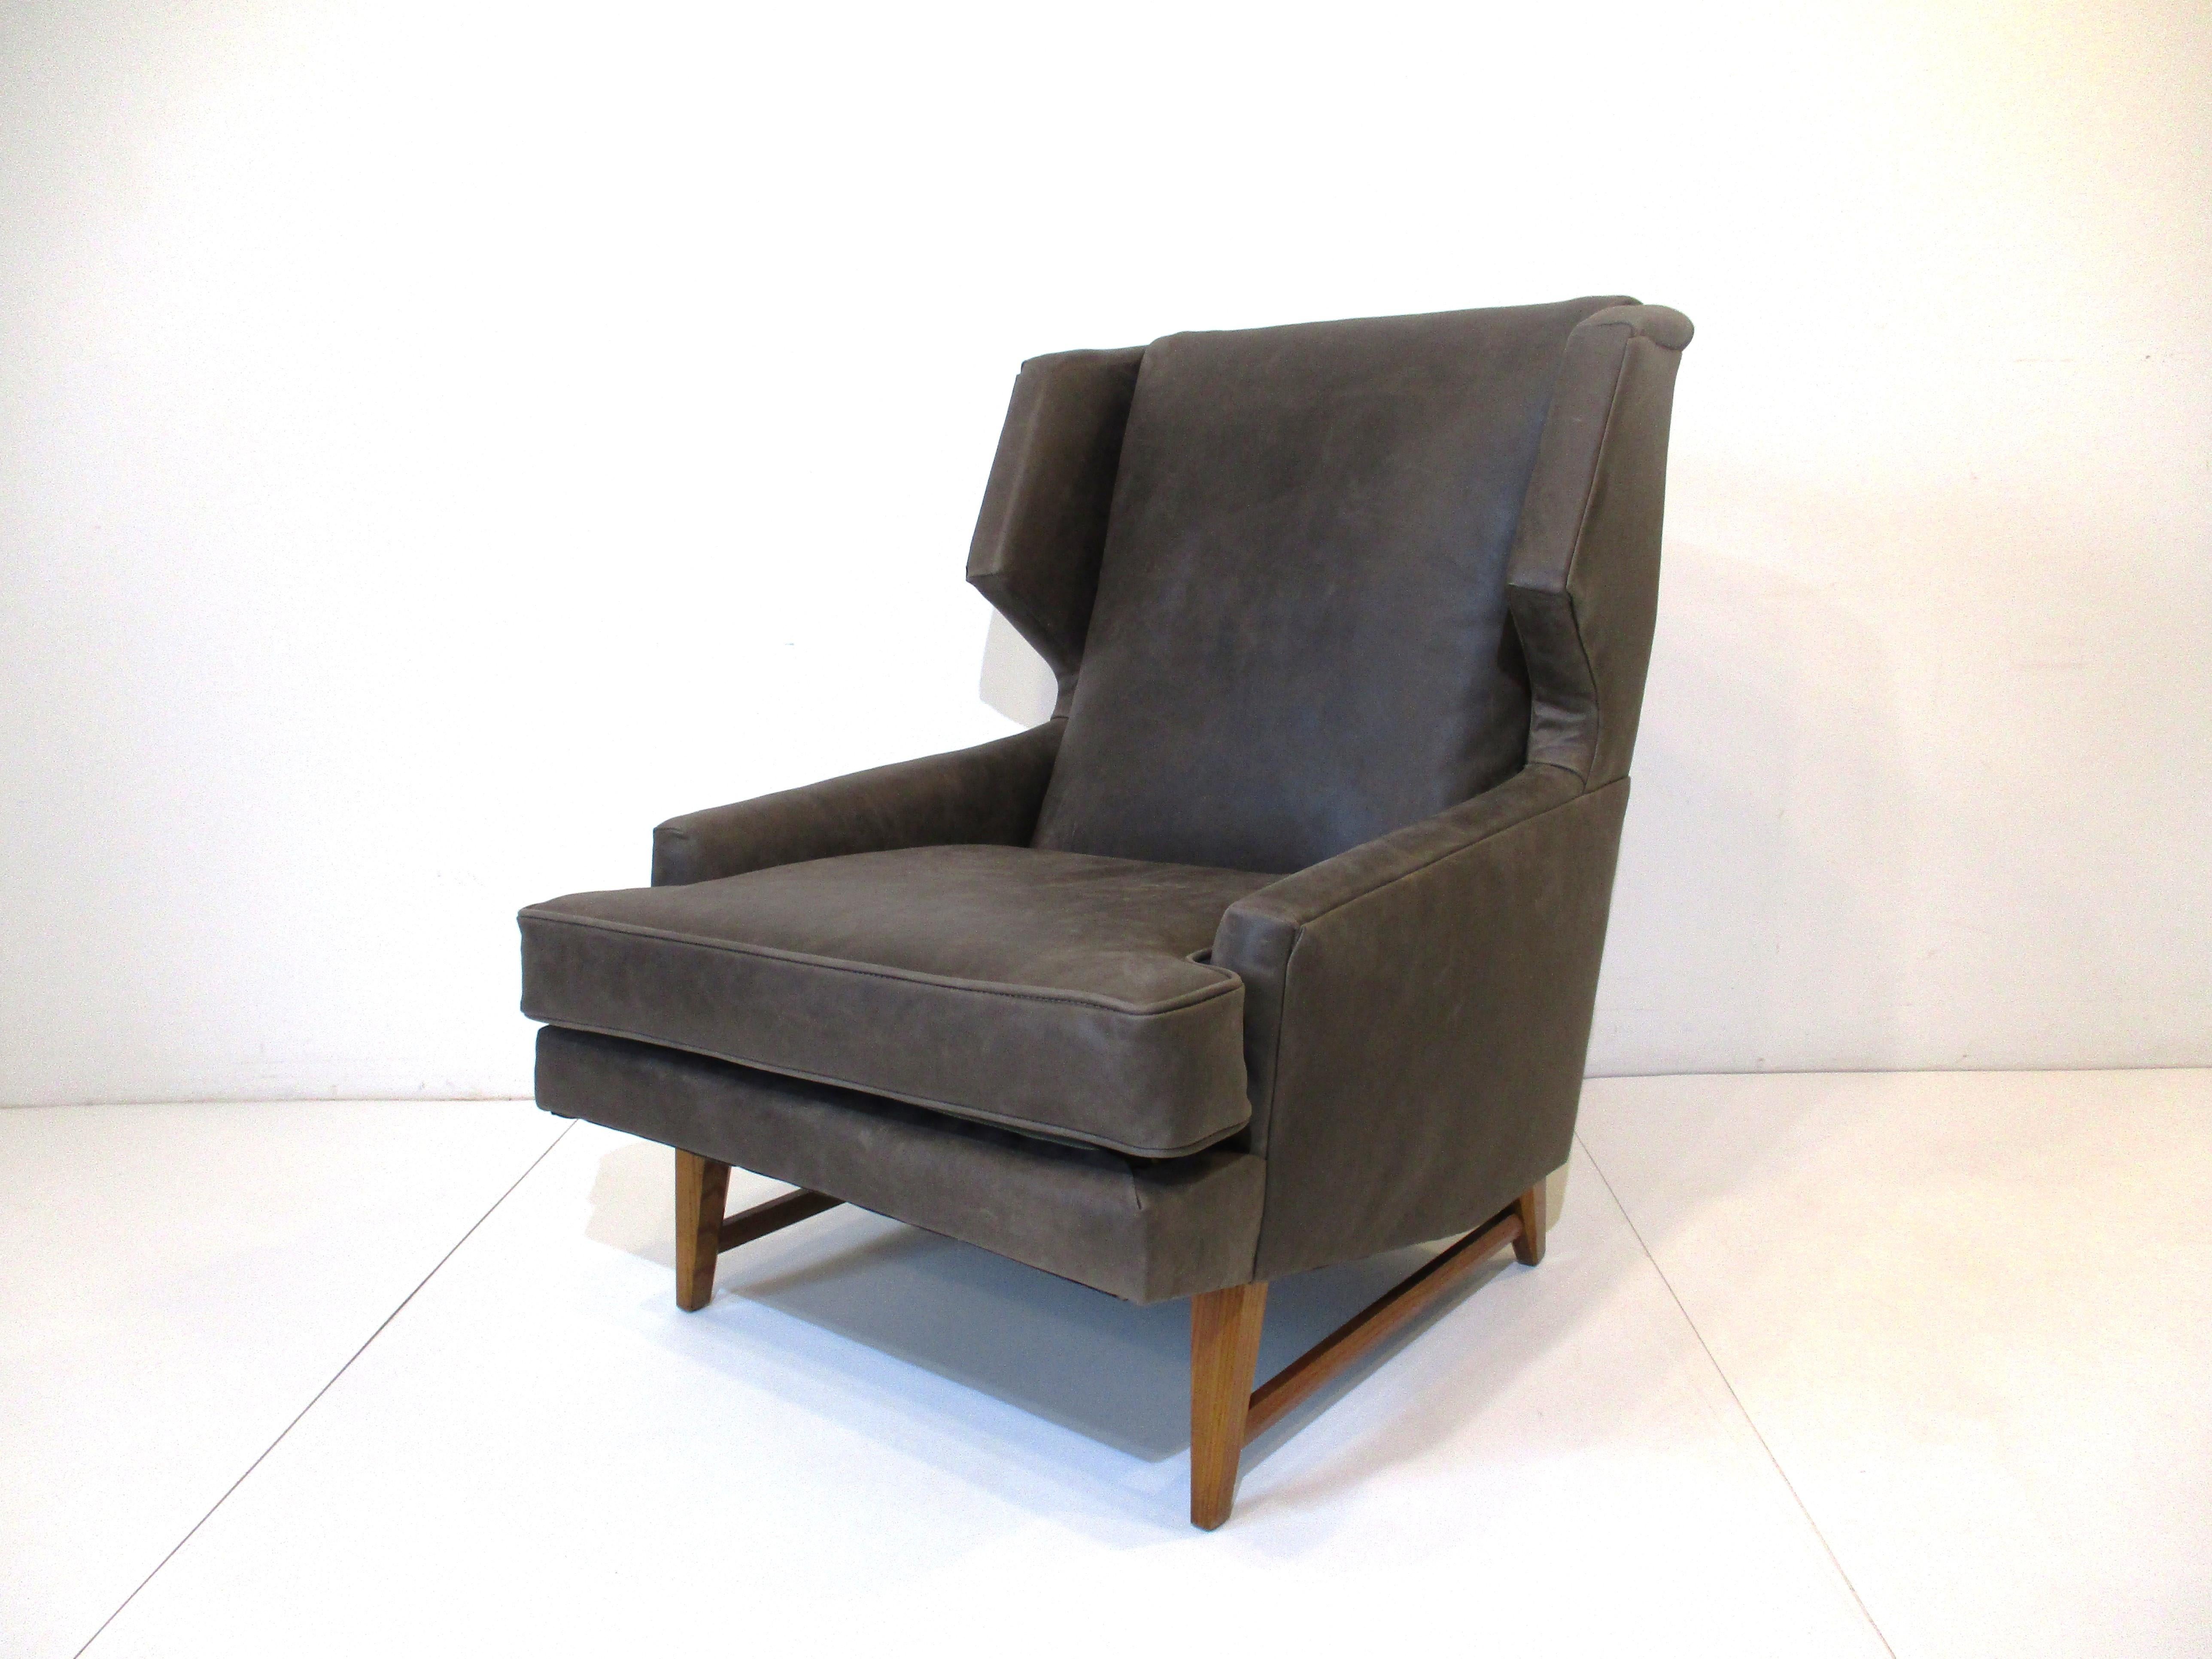 Ein Mid-Century-Flügel zurück gestylt Lounge-Sessel in einem notleidenden natürlichen grige farbigen weichen Leder restauriert. Die Holzbeine und Strechers haben abgeschrägte Details, die dem Stuhl einen schönen maßgeschneiderten Look verleihen, der